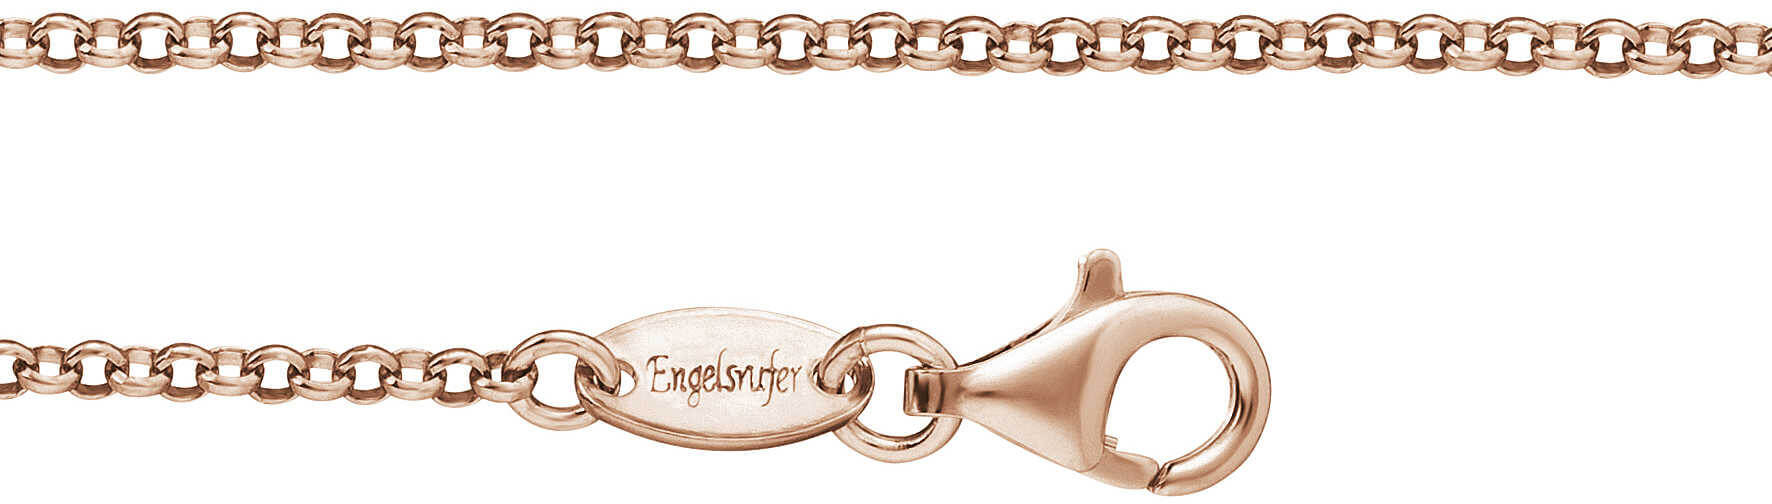 Engelsrufer Růžově zlacený stříbrný řetízek ERN-R 60 cm